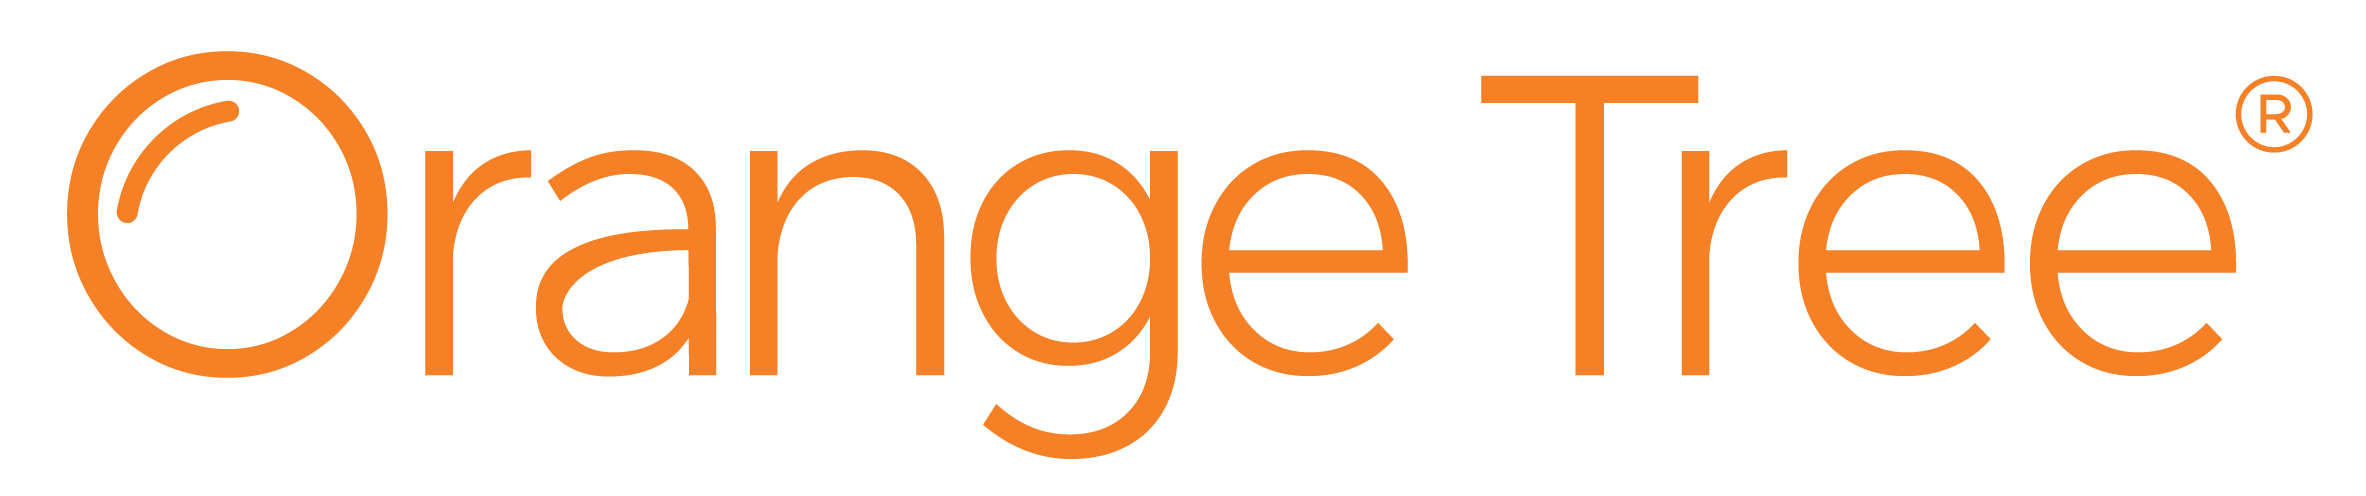 OTES_logo_orange